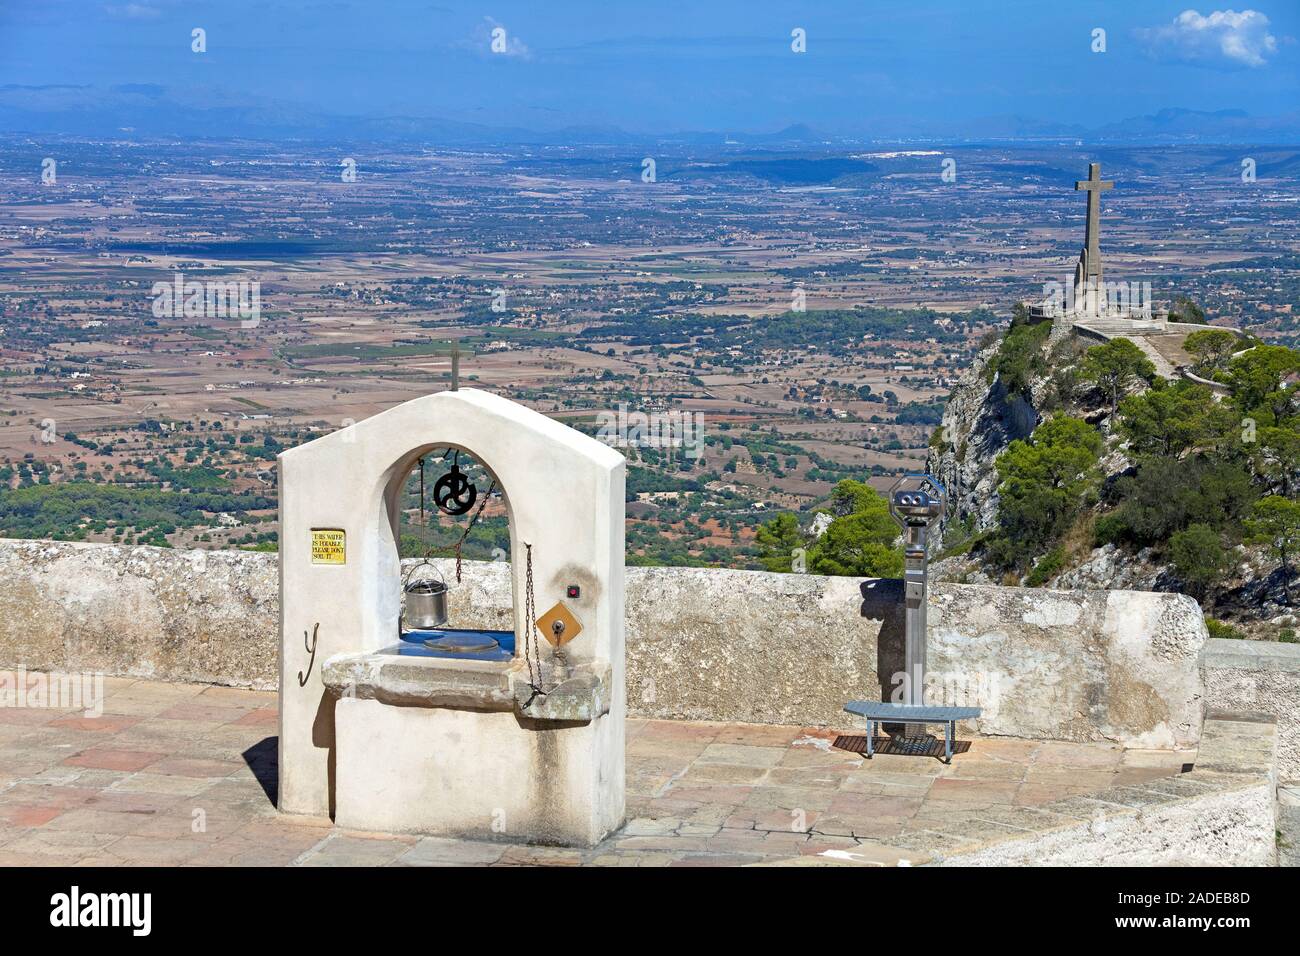 Tirer bien au monastère Santuari de Sant Salvador sur le dessus de la colline Puig de Sant Salvador, fondée en 1342, Felanitx, Majorque, îles Baléares, Espagne Banque D'Images